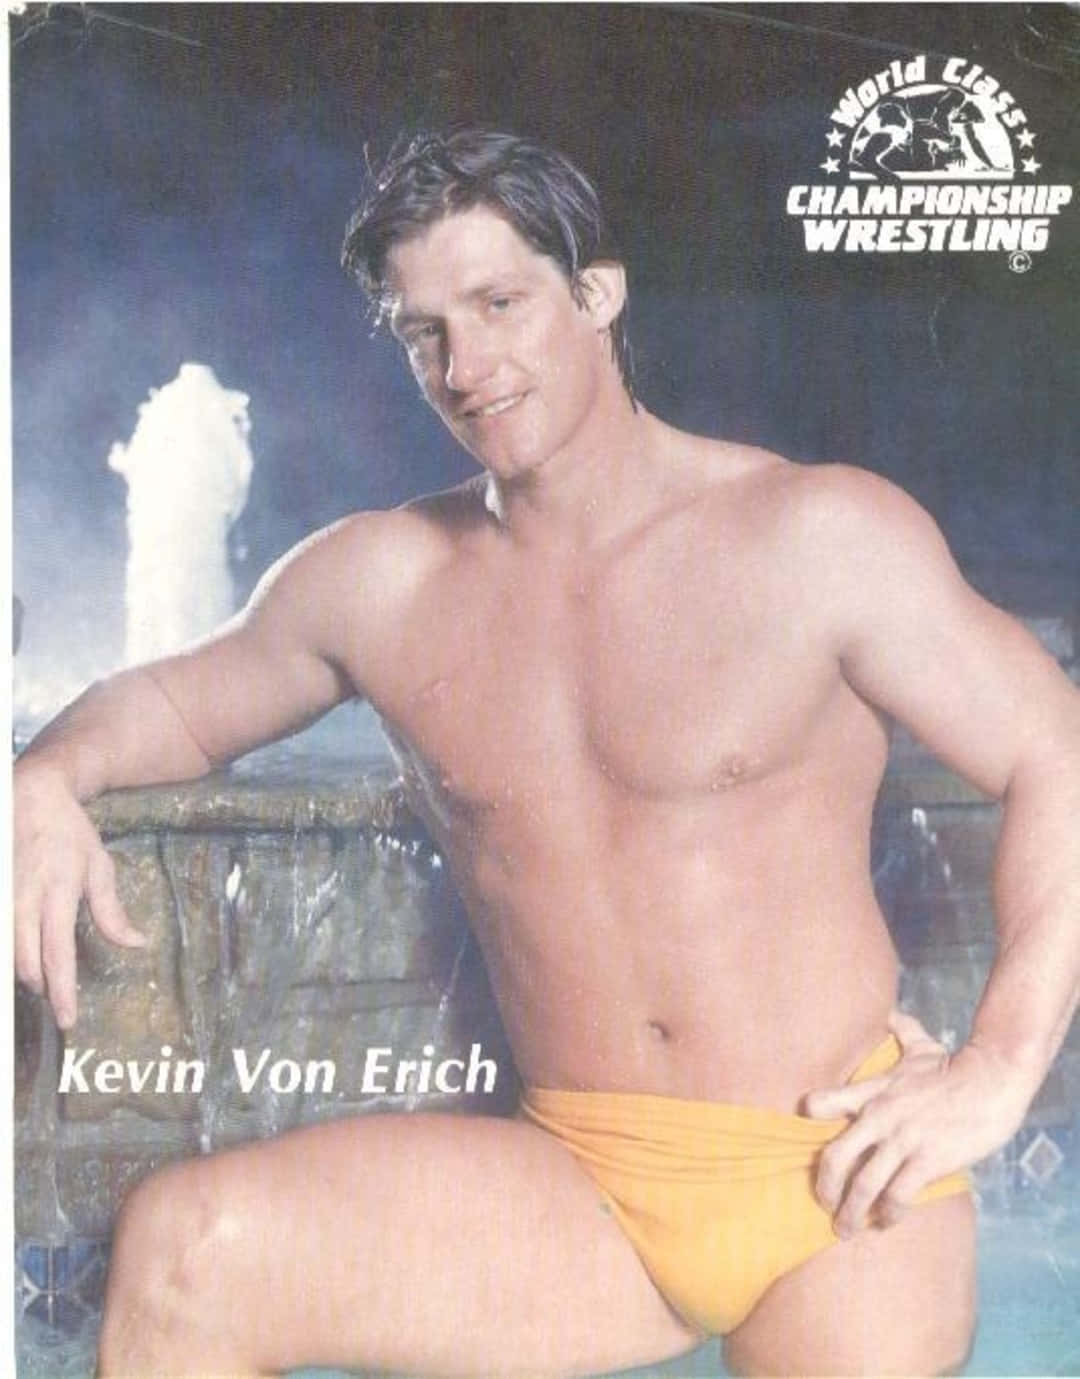 World Class Championship Wrestling Kevin Von Erich Wallpaper